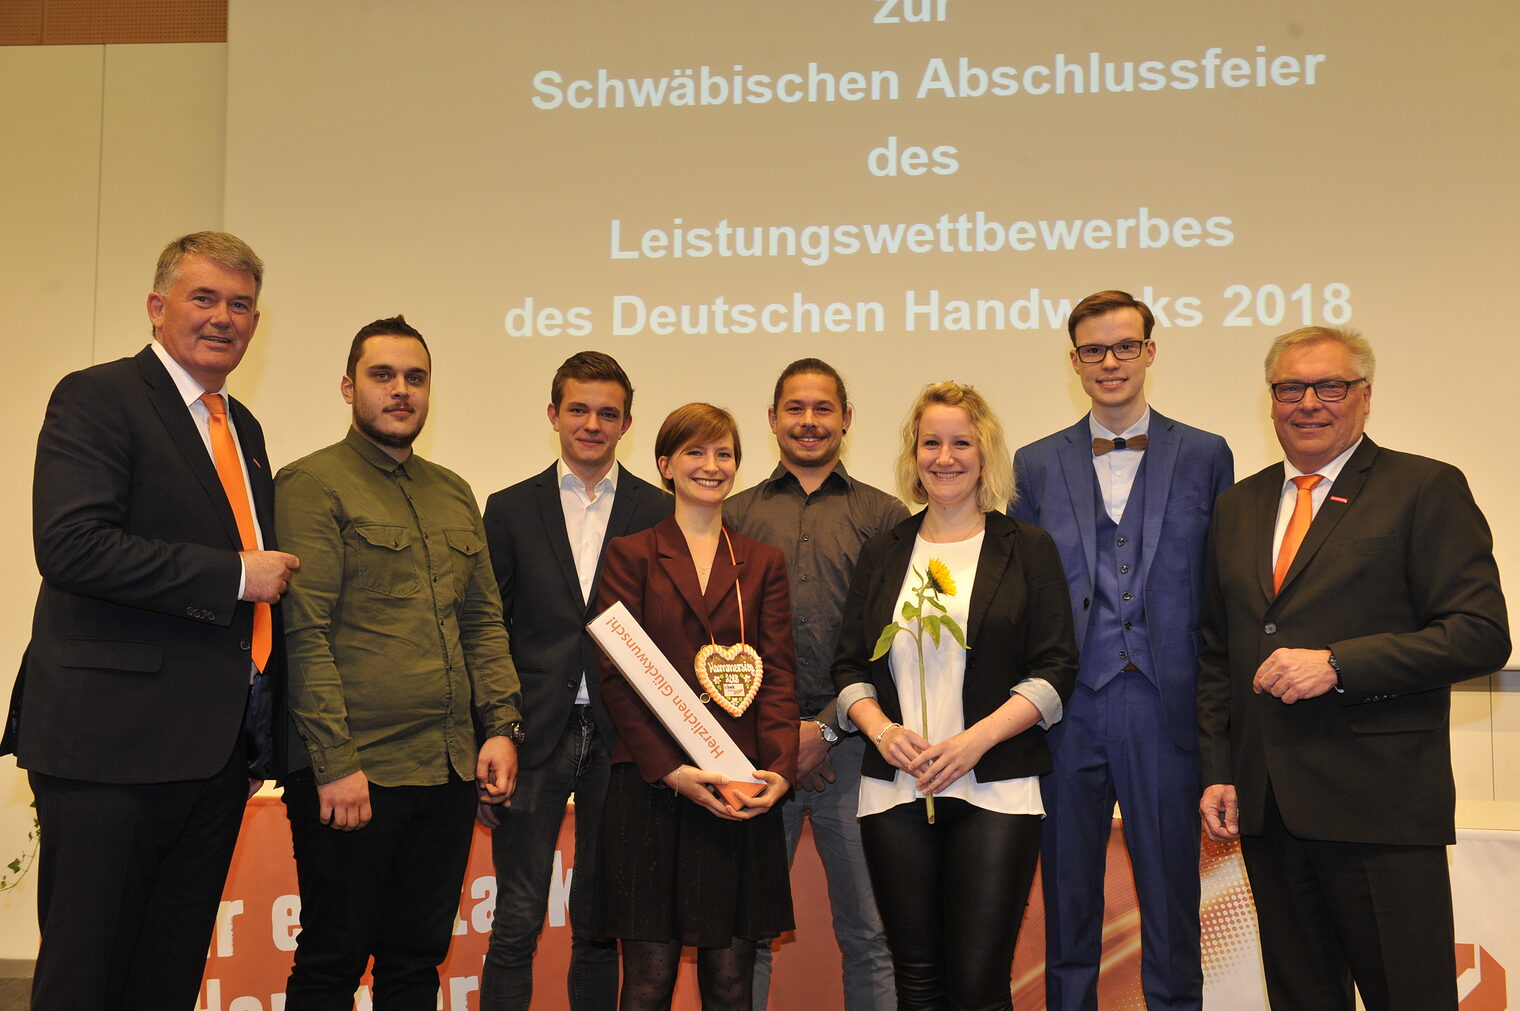 Leistungswettbewerb des Deutschen Handwerks 2018 9